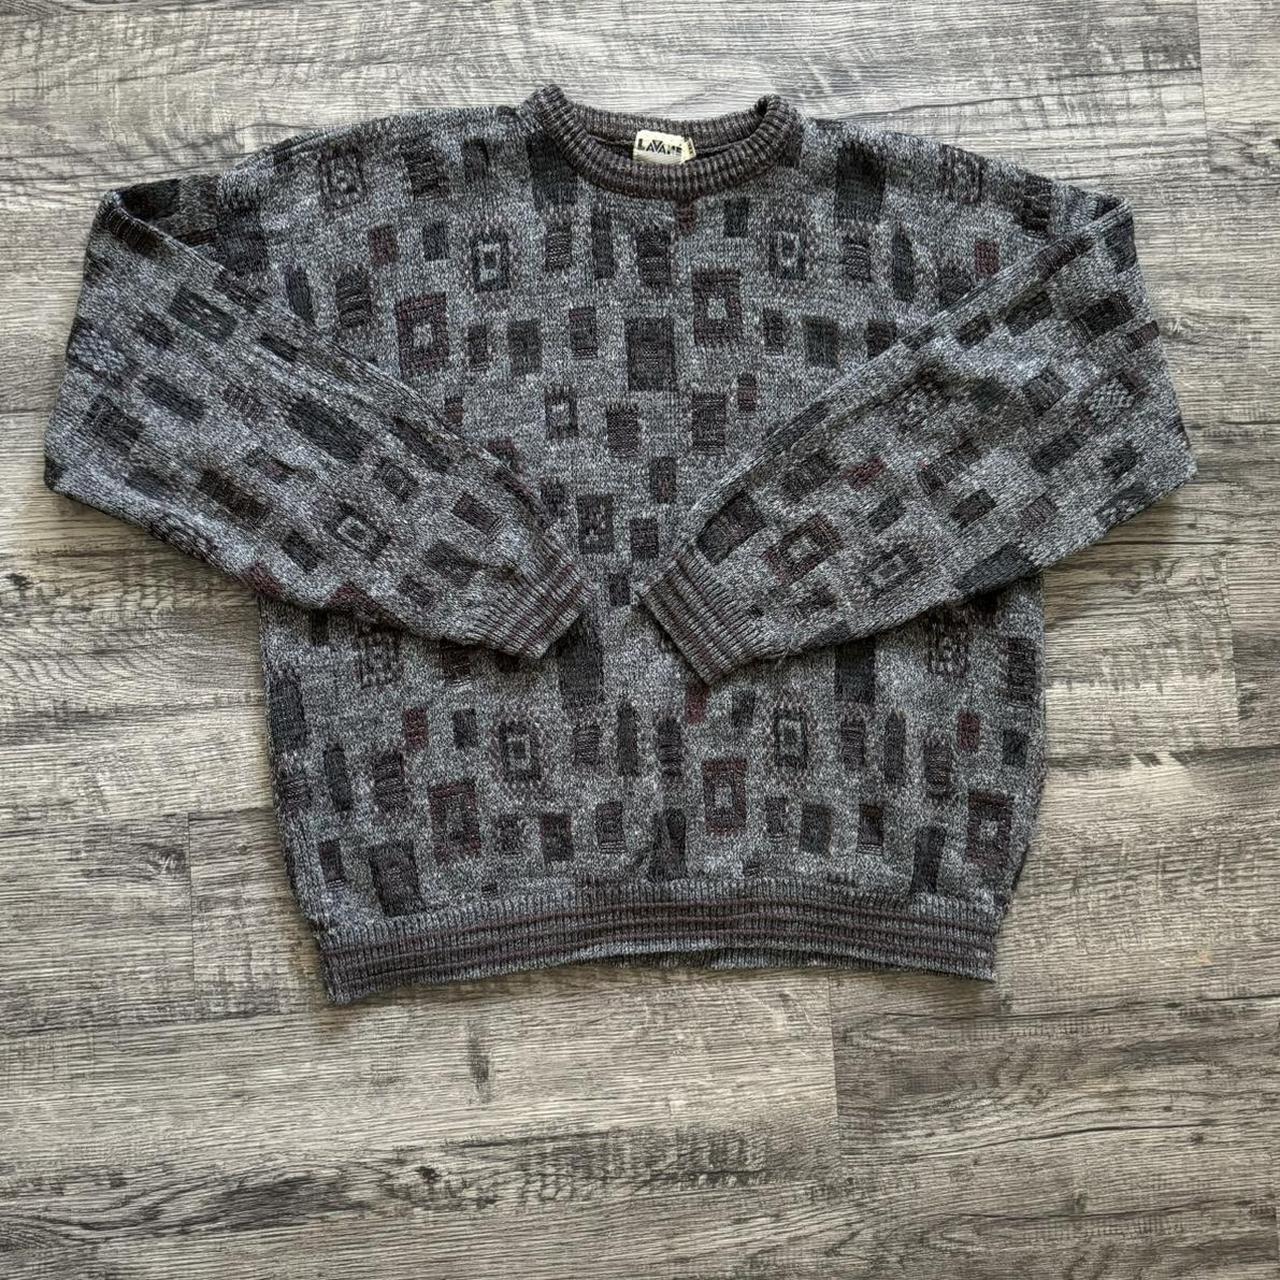 Vintage 80s Lavané knit sweater Loose fit Small... - Depop